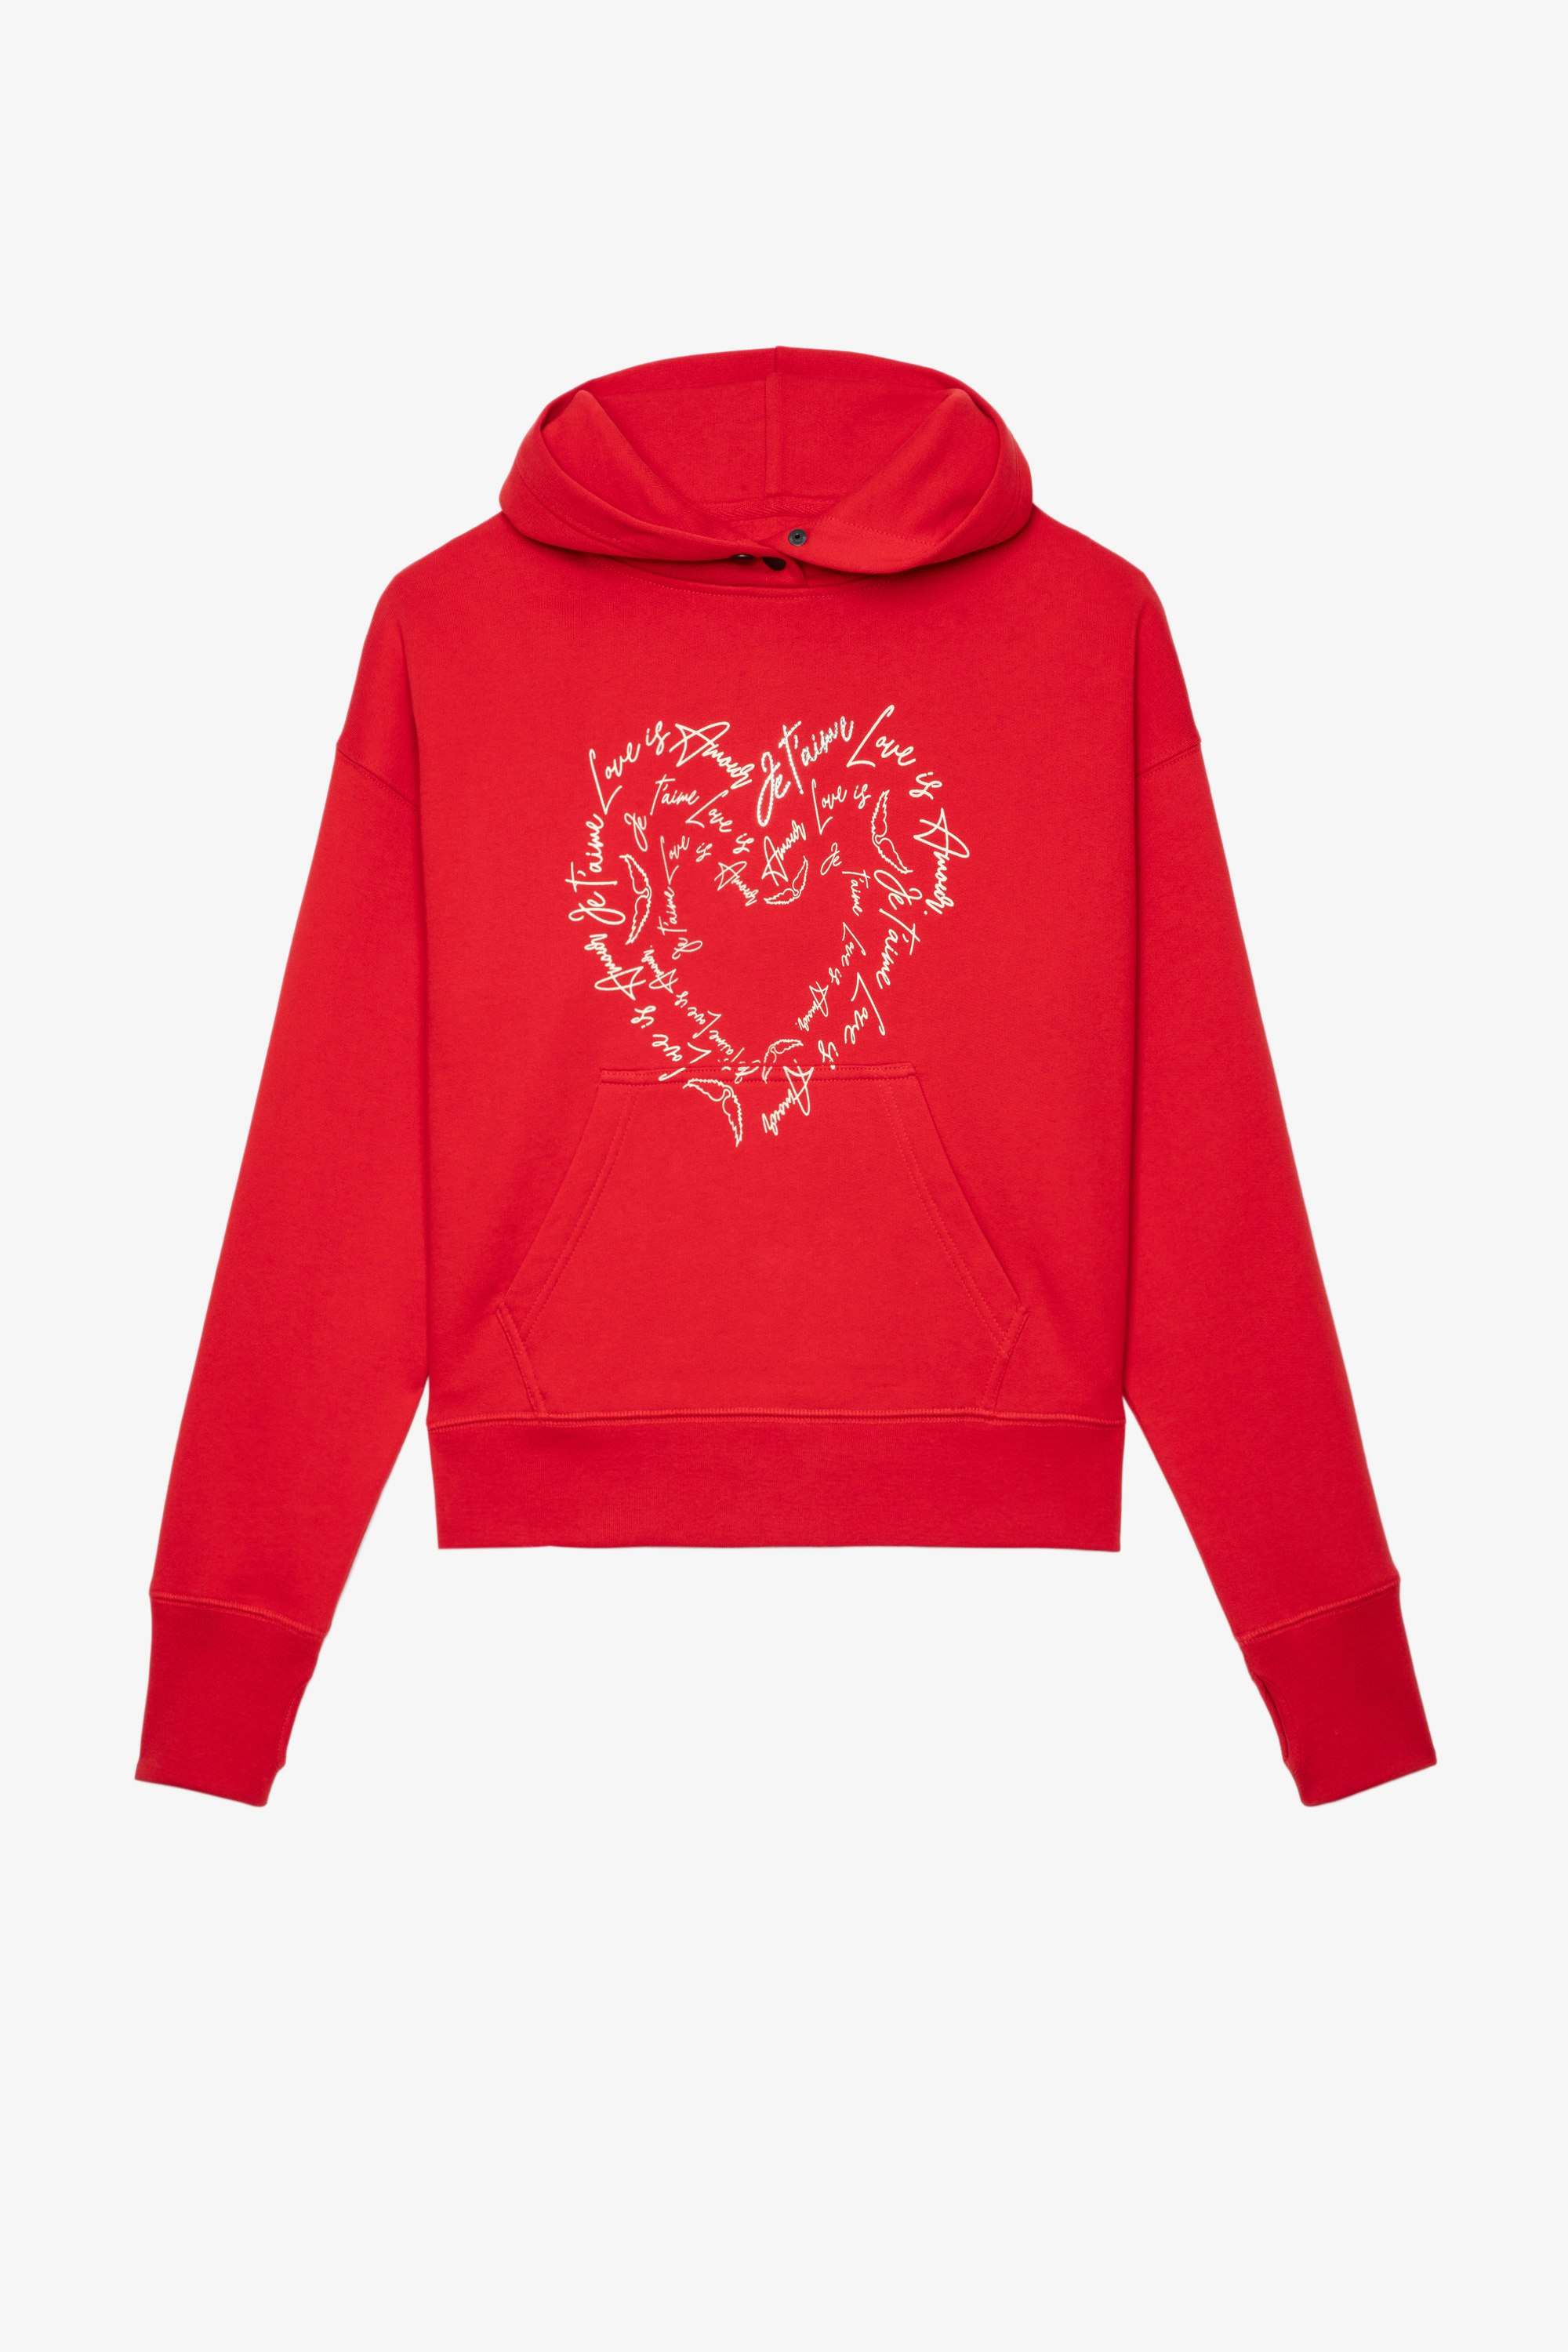 Sudadera Mia Sudadera con capucha de algodón rojo con mensajes de amor en forma de corazón para mujer